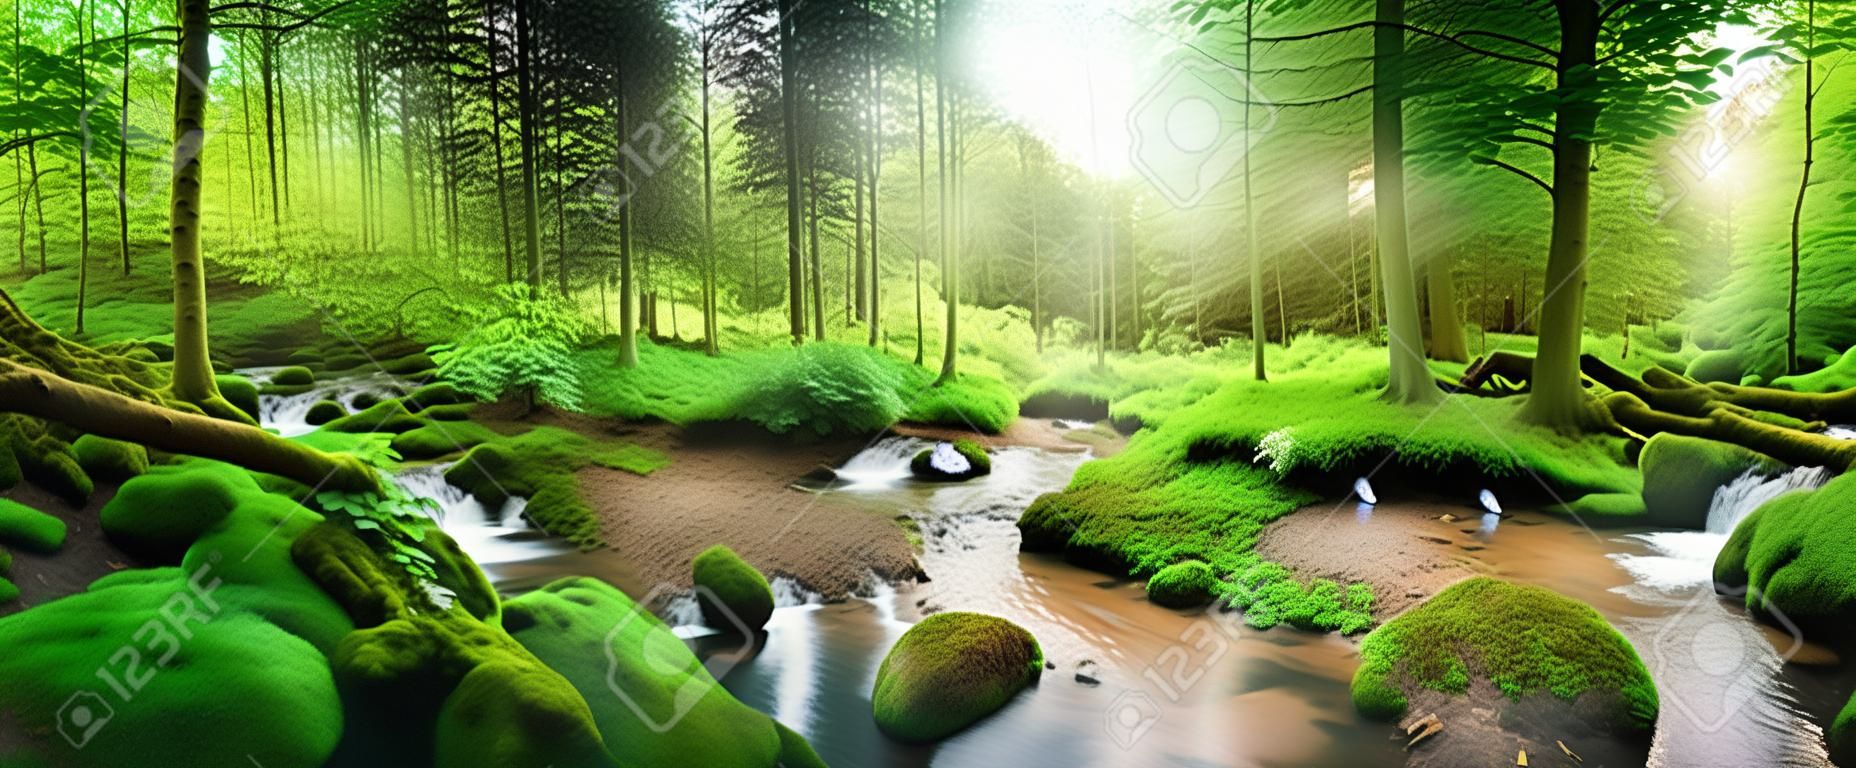 Encantador cenário de floresta panorâmica com luz suave caindo através da folhagem, um riacho com água tranquila e uma garça